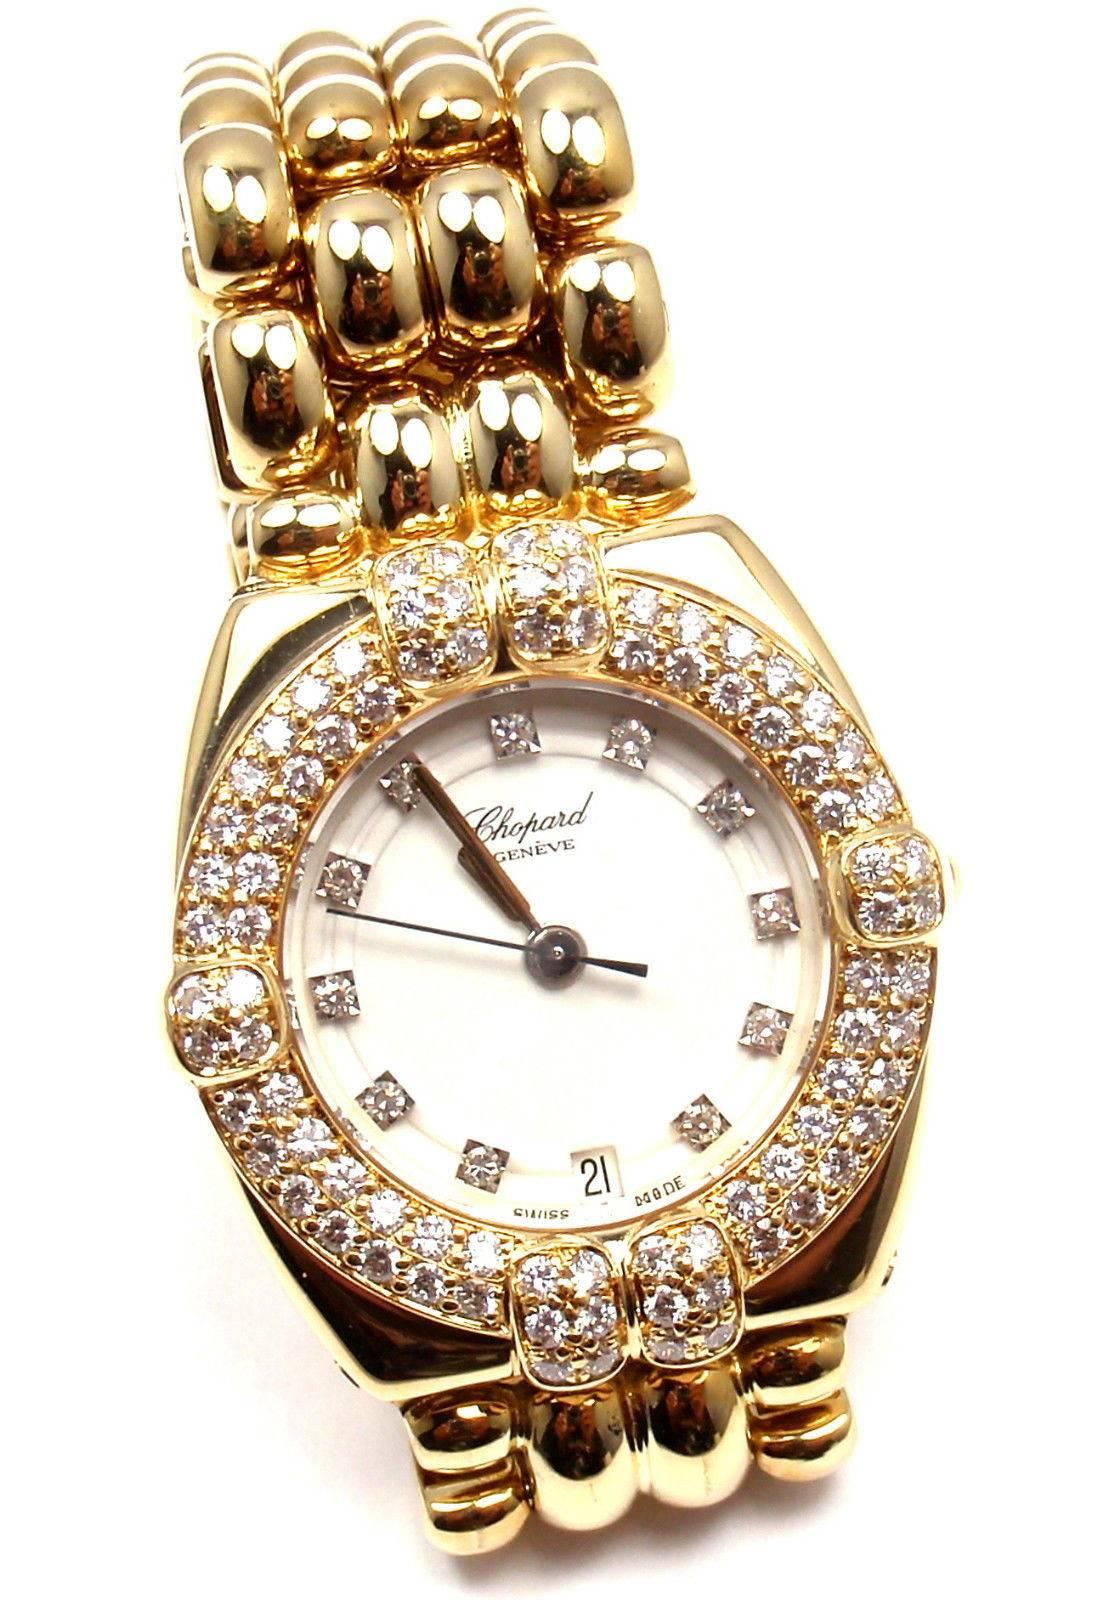 Women's Chopard lady's yellow gold diamond Gstaad quartz wristwatch